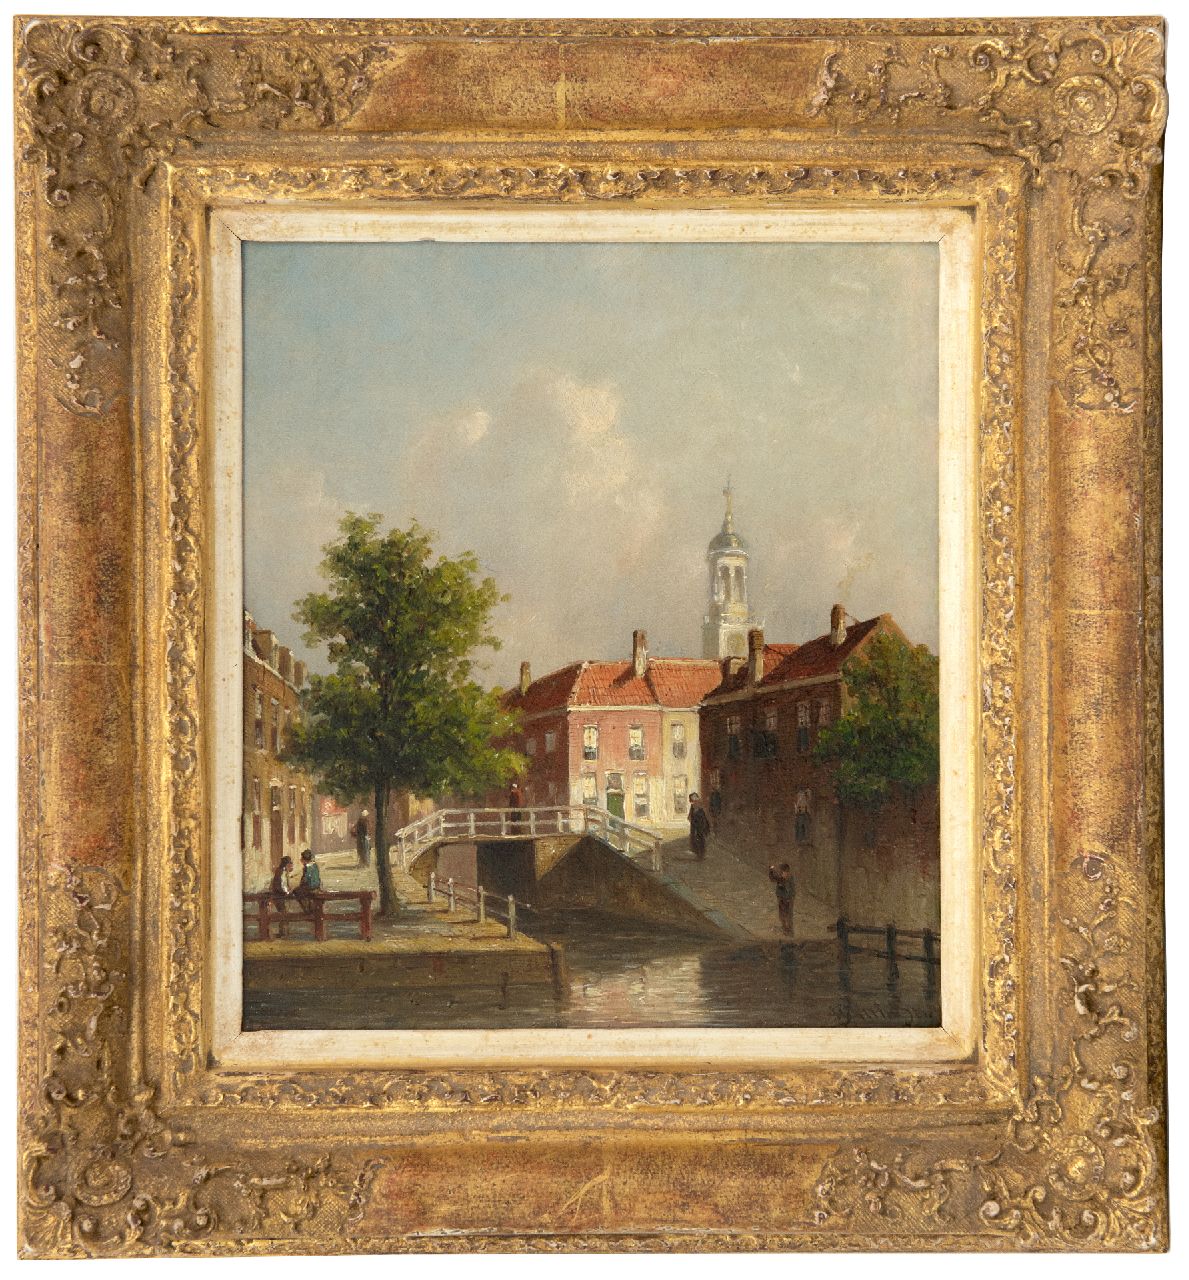 Vertin P.G.  | Petrus Gerardus Vertin | Schilderijen te koop aangeboden | Gezicht op de Nieuwe Gracht, hoek Jansstraat te Haarlem, olieverf op paneel 23,6 x 20,8 cm, gesigneerd rechtsonder